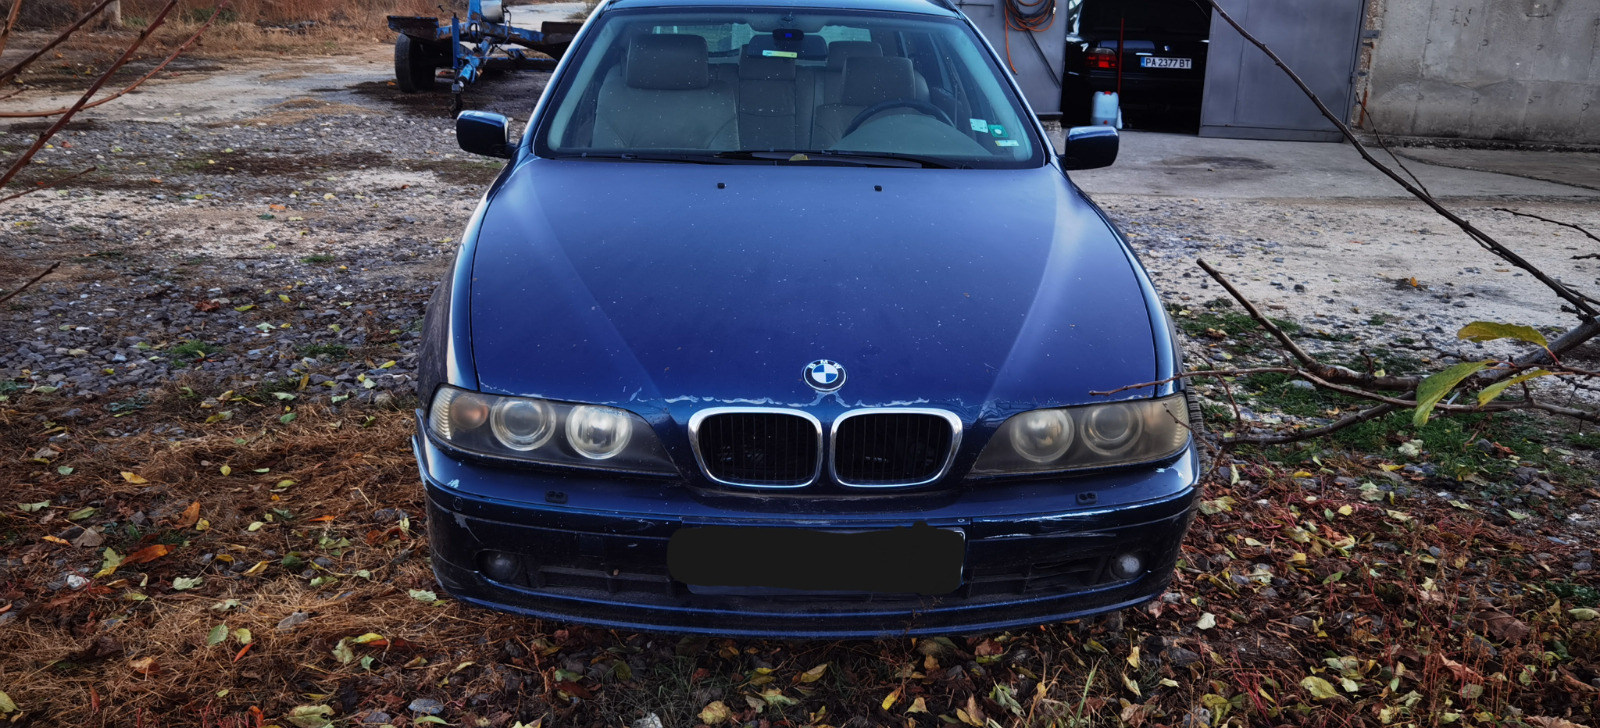 BMW 528  - изображение 1